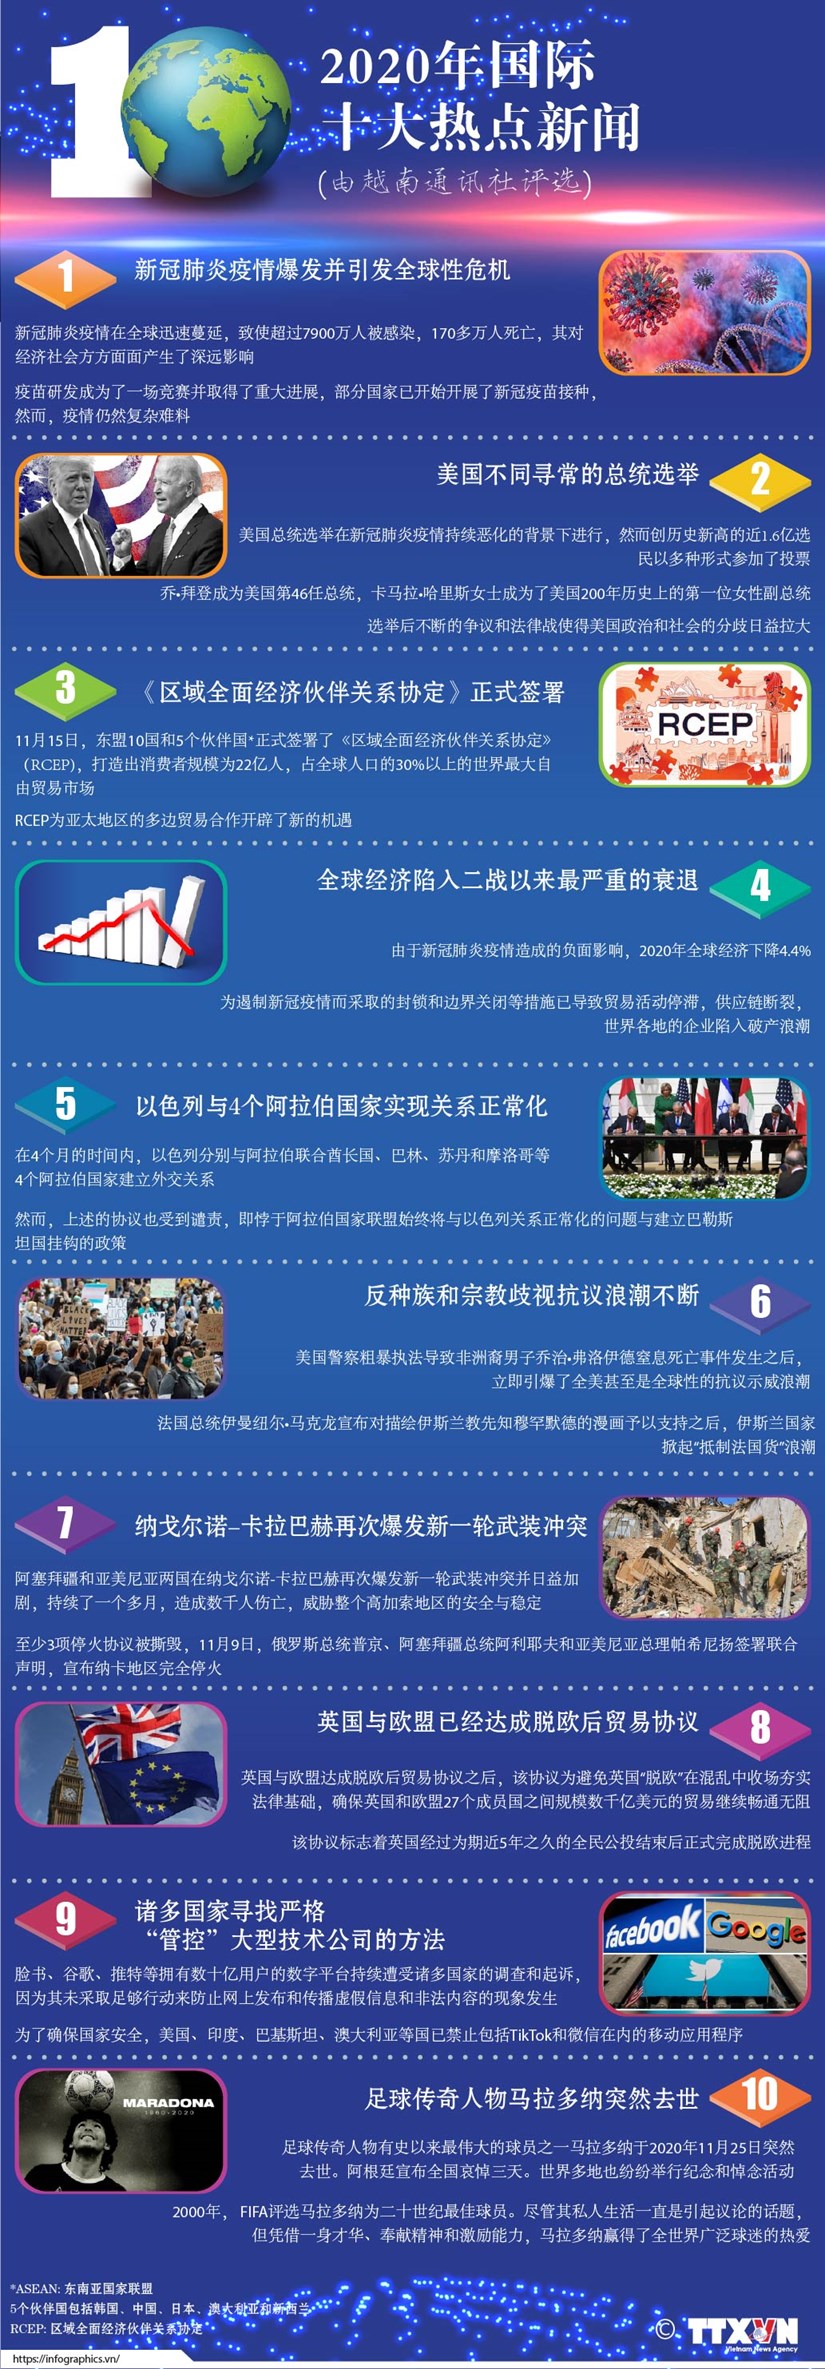 图表新闻：越通社评选2020年国际十大热点新闻 hinh anh 1